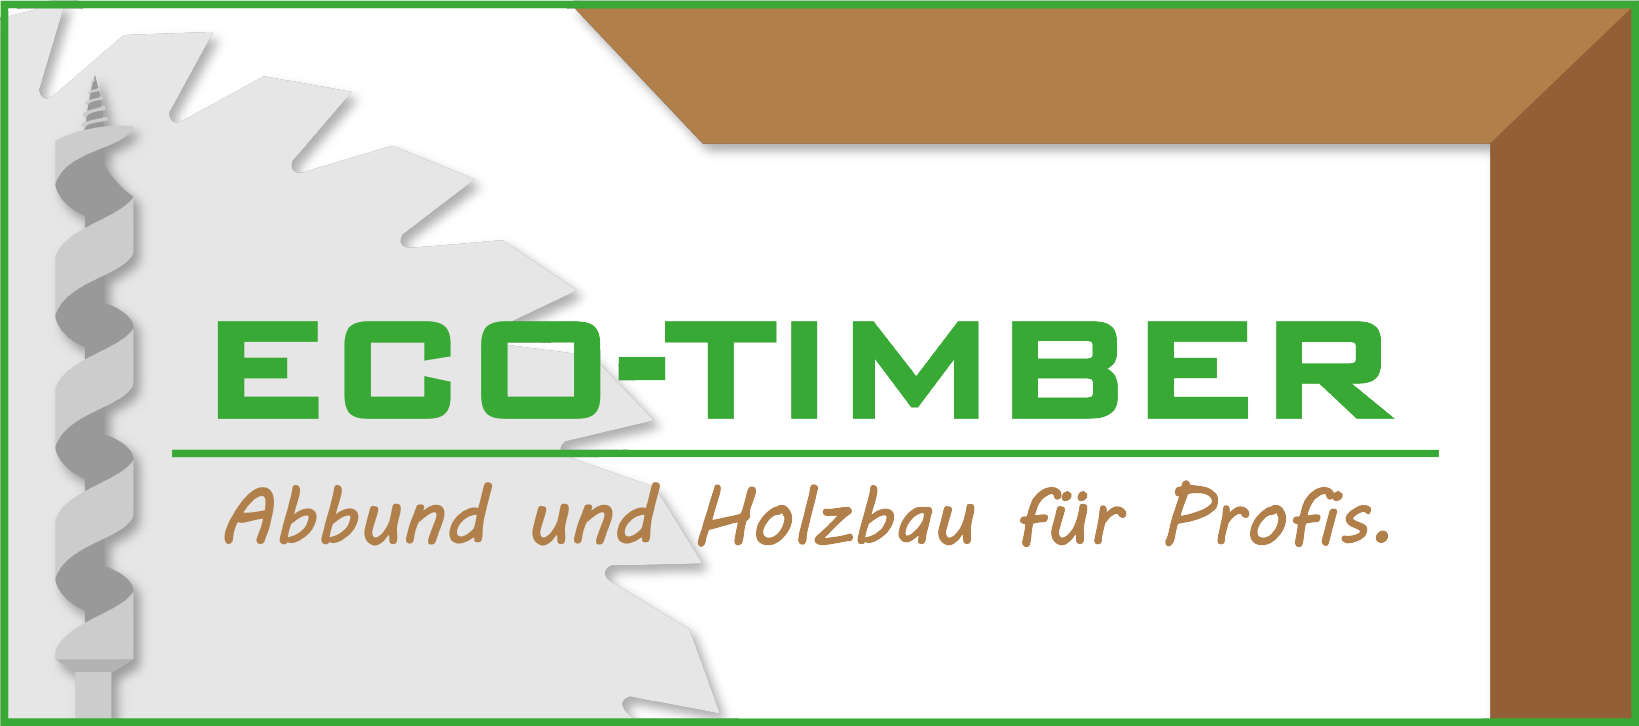 ECO-TIMBER | Abbund und Holzbau für Profis - Logo